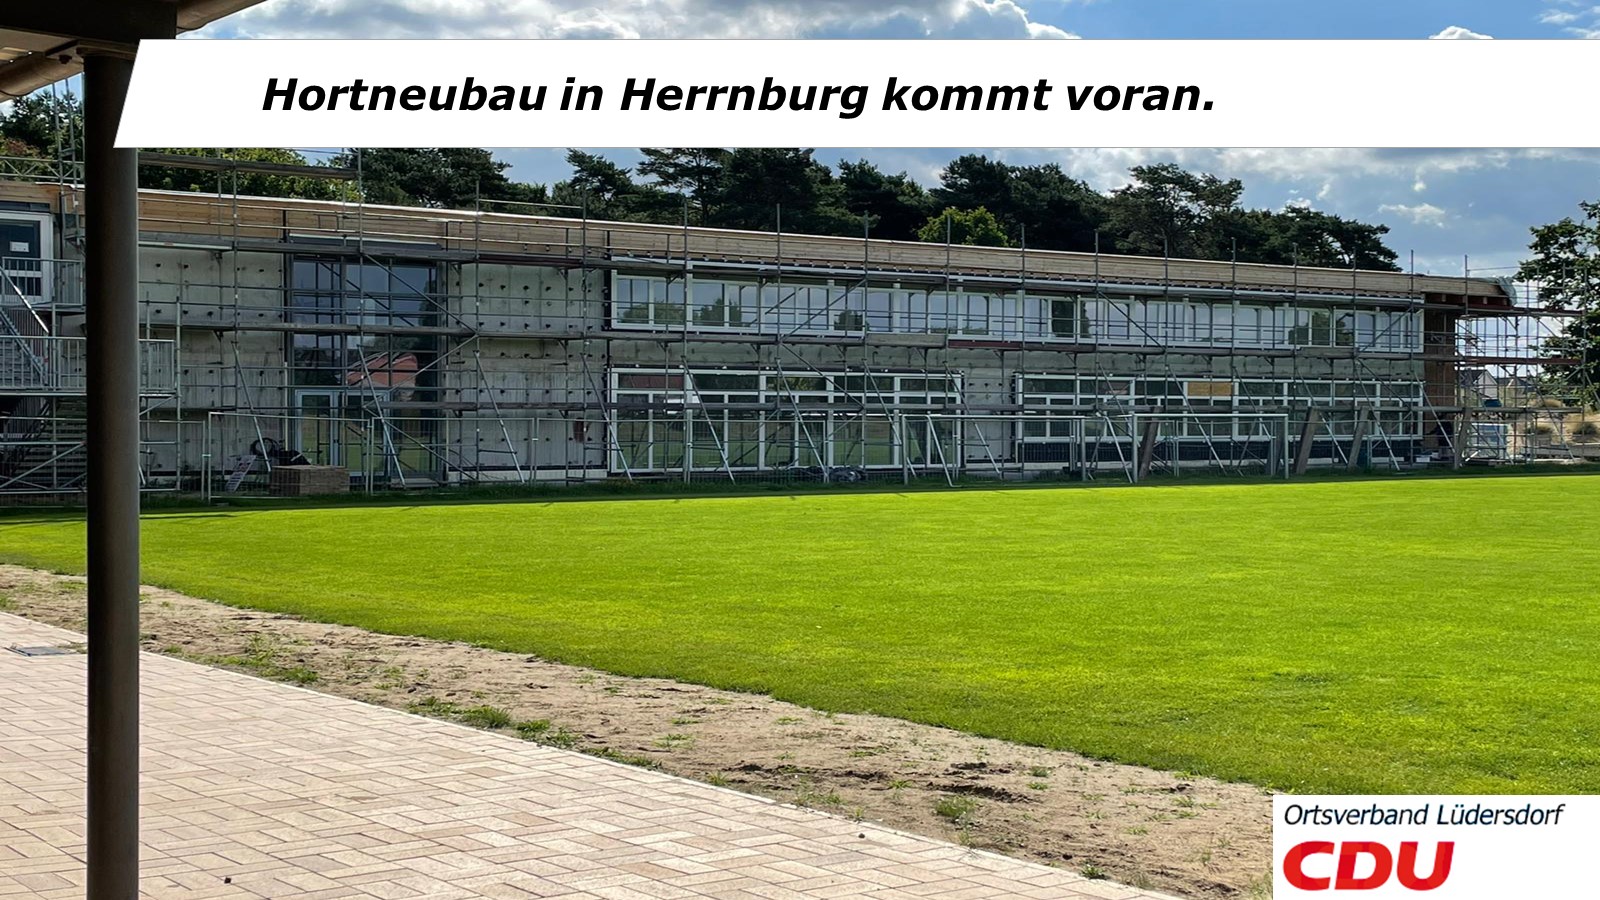 Der Hortneubau in Herrnburg kommt voran.